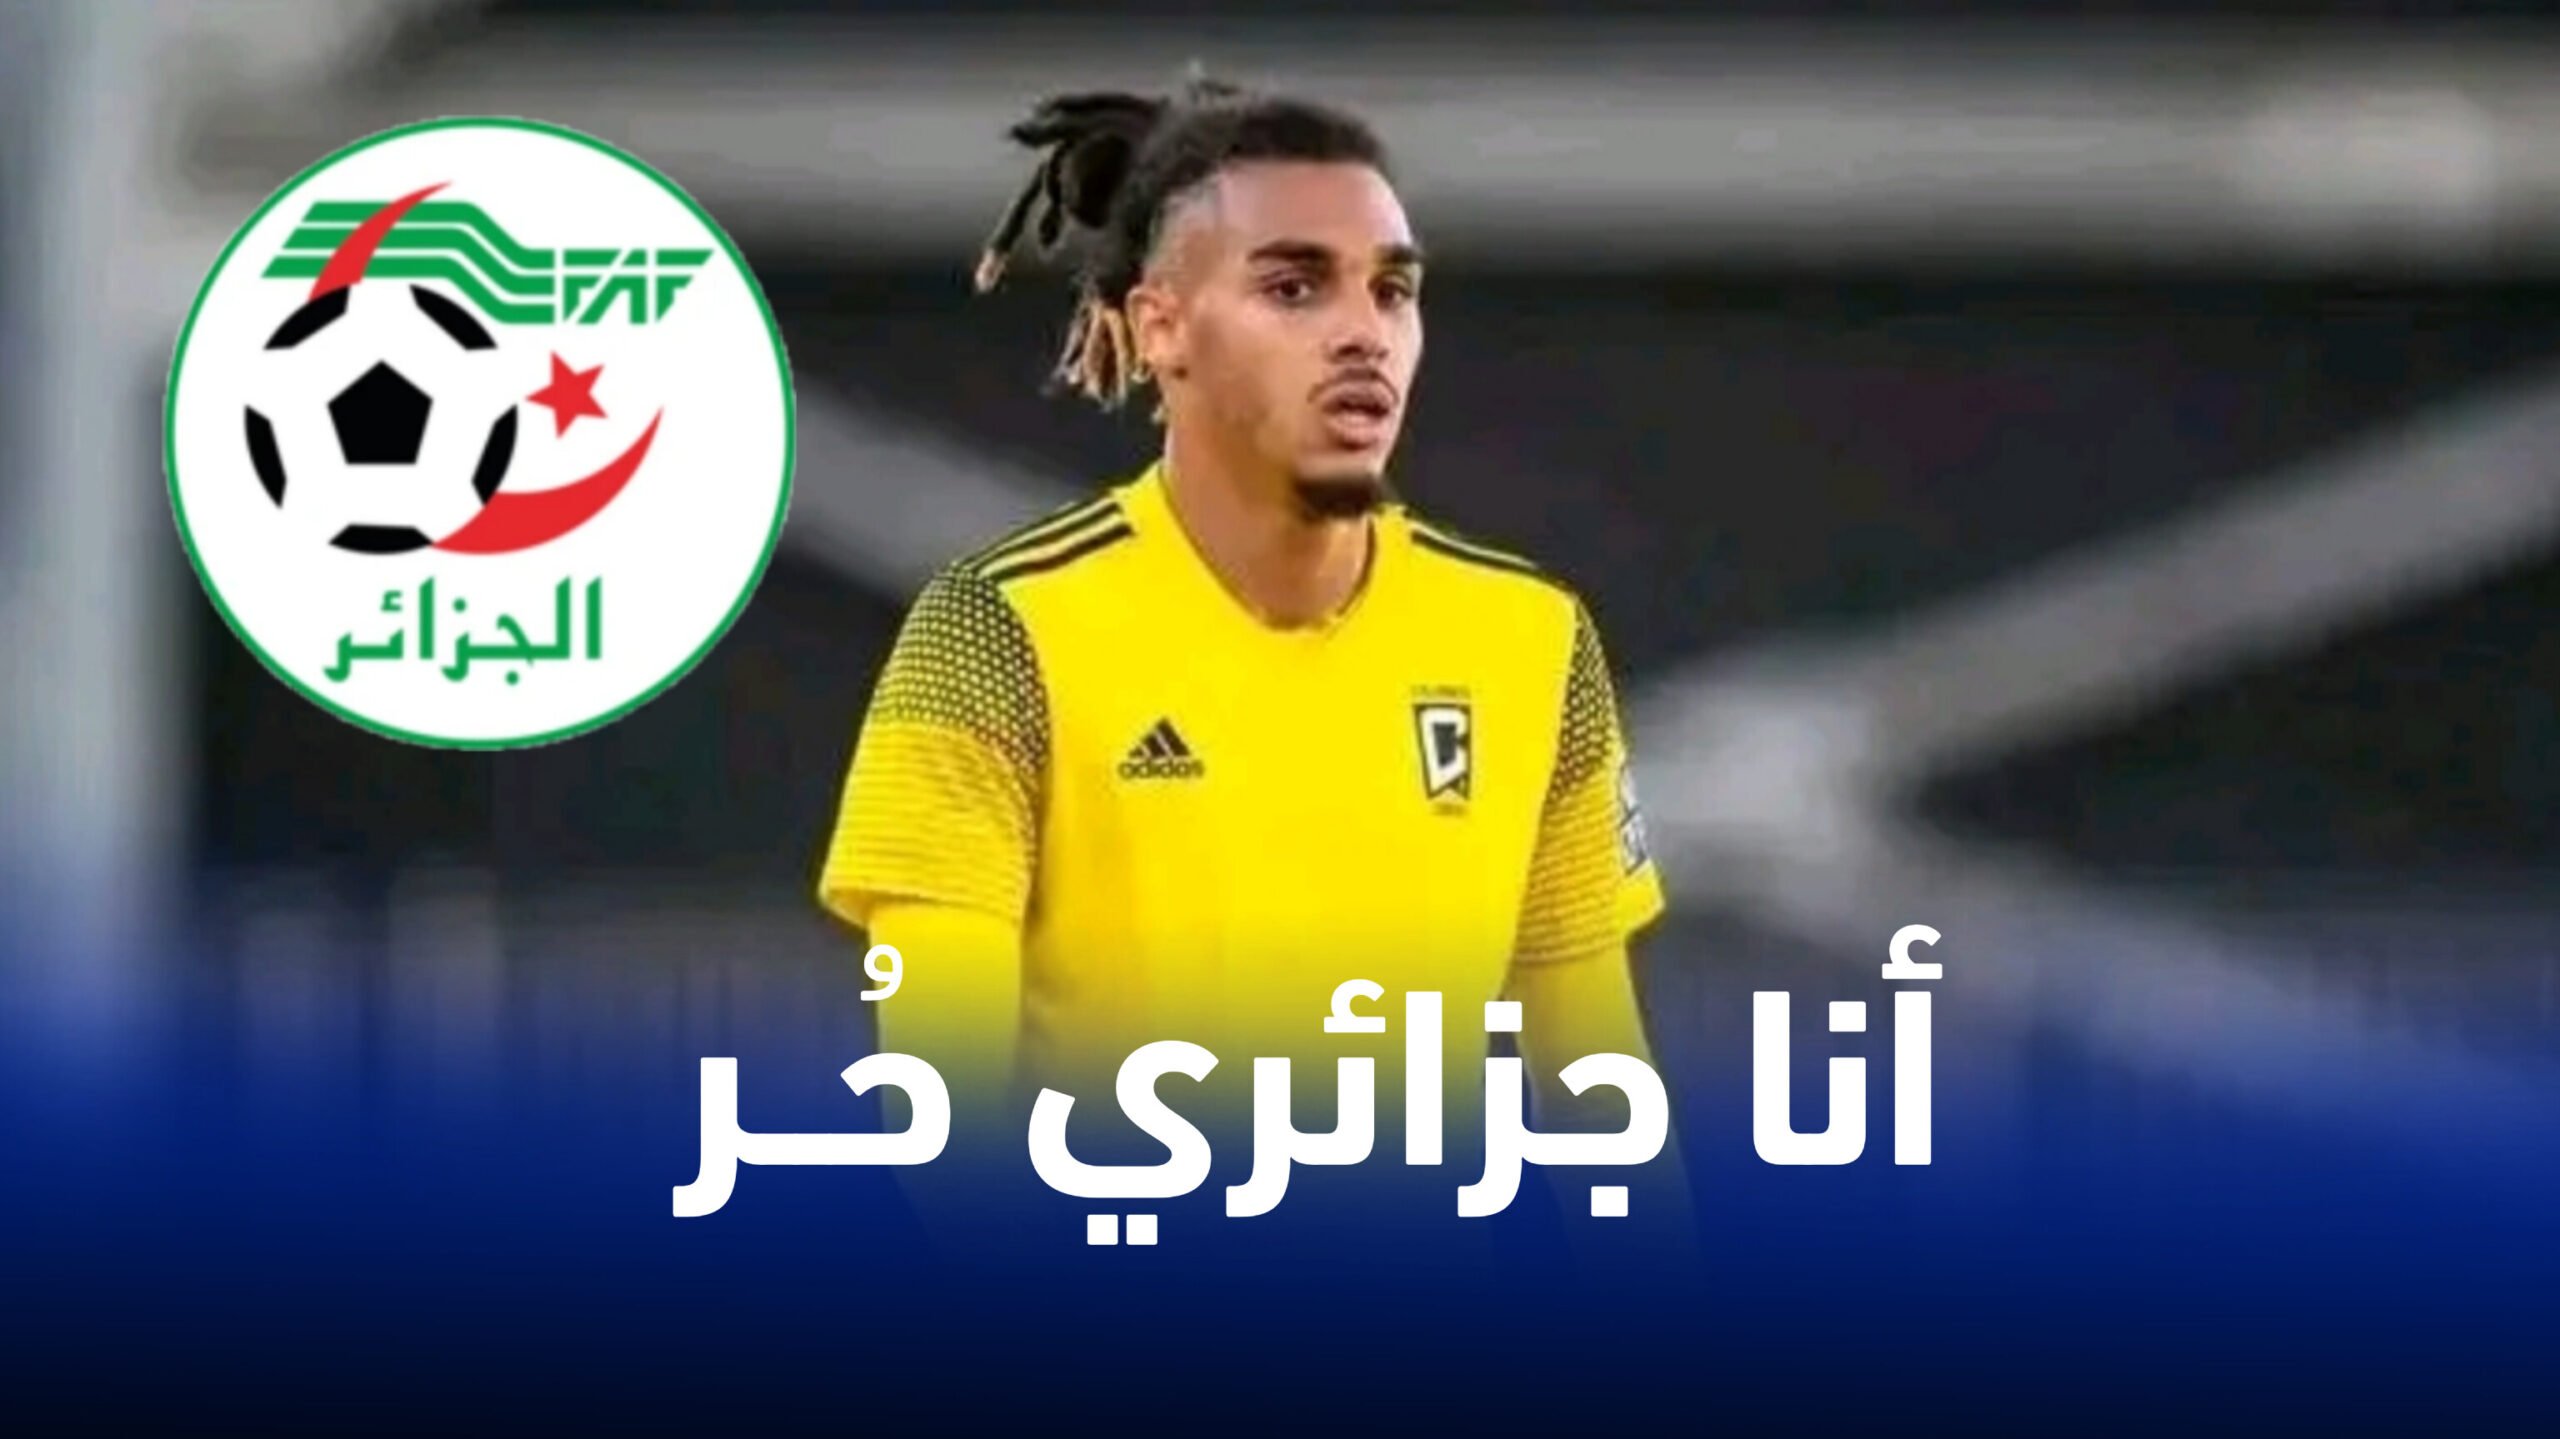 لاعب ذو أصول جزائرية يرفض تمثيل منتخب كندا من أجل المنتخب الجزائري